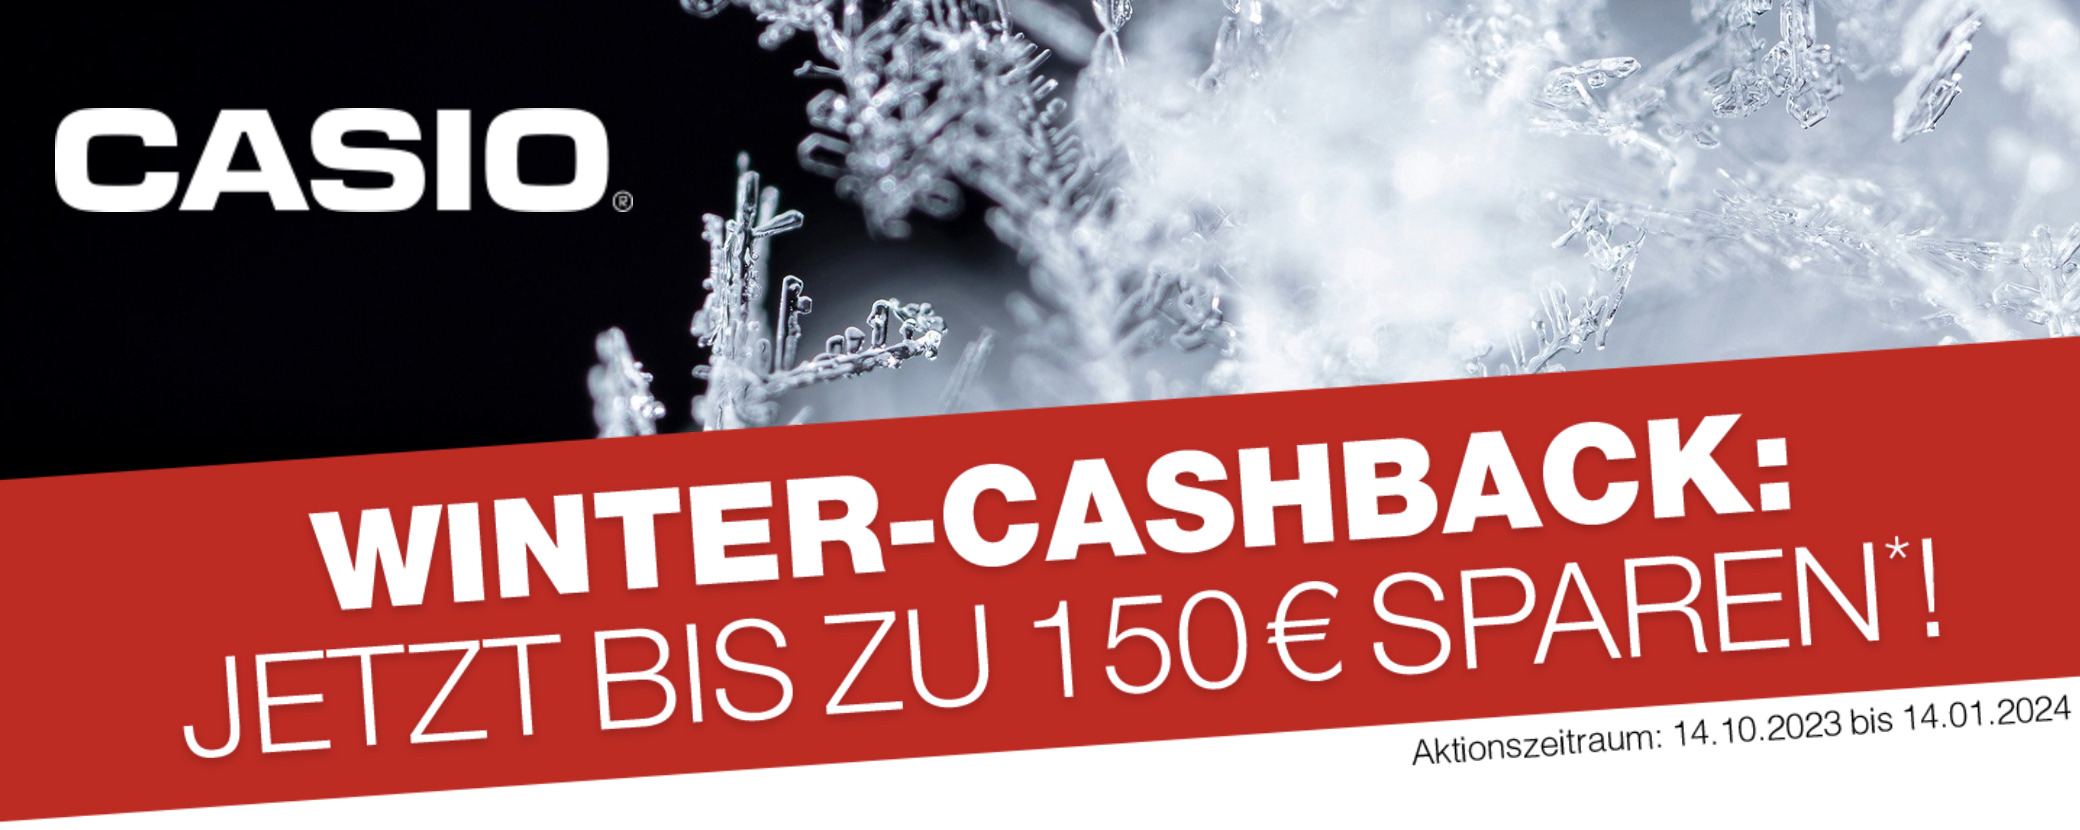 case_Case “Casio Winter-Cashback 2023”